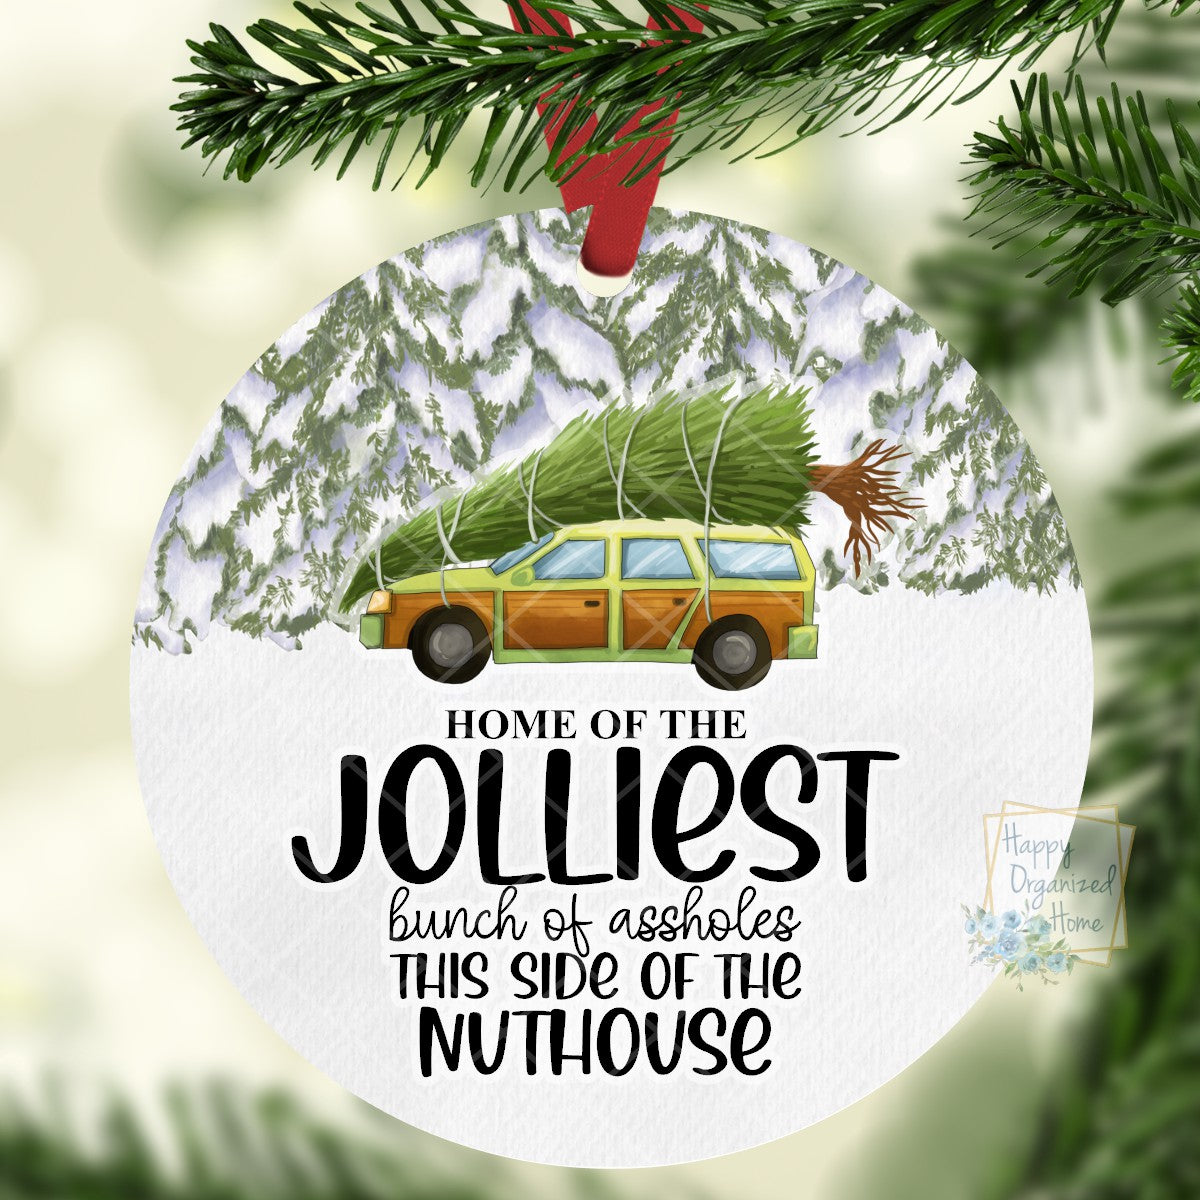 Jolliest bunch of assholes - Christmas Ornament